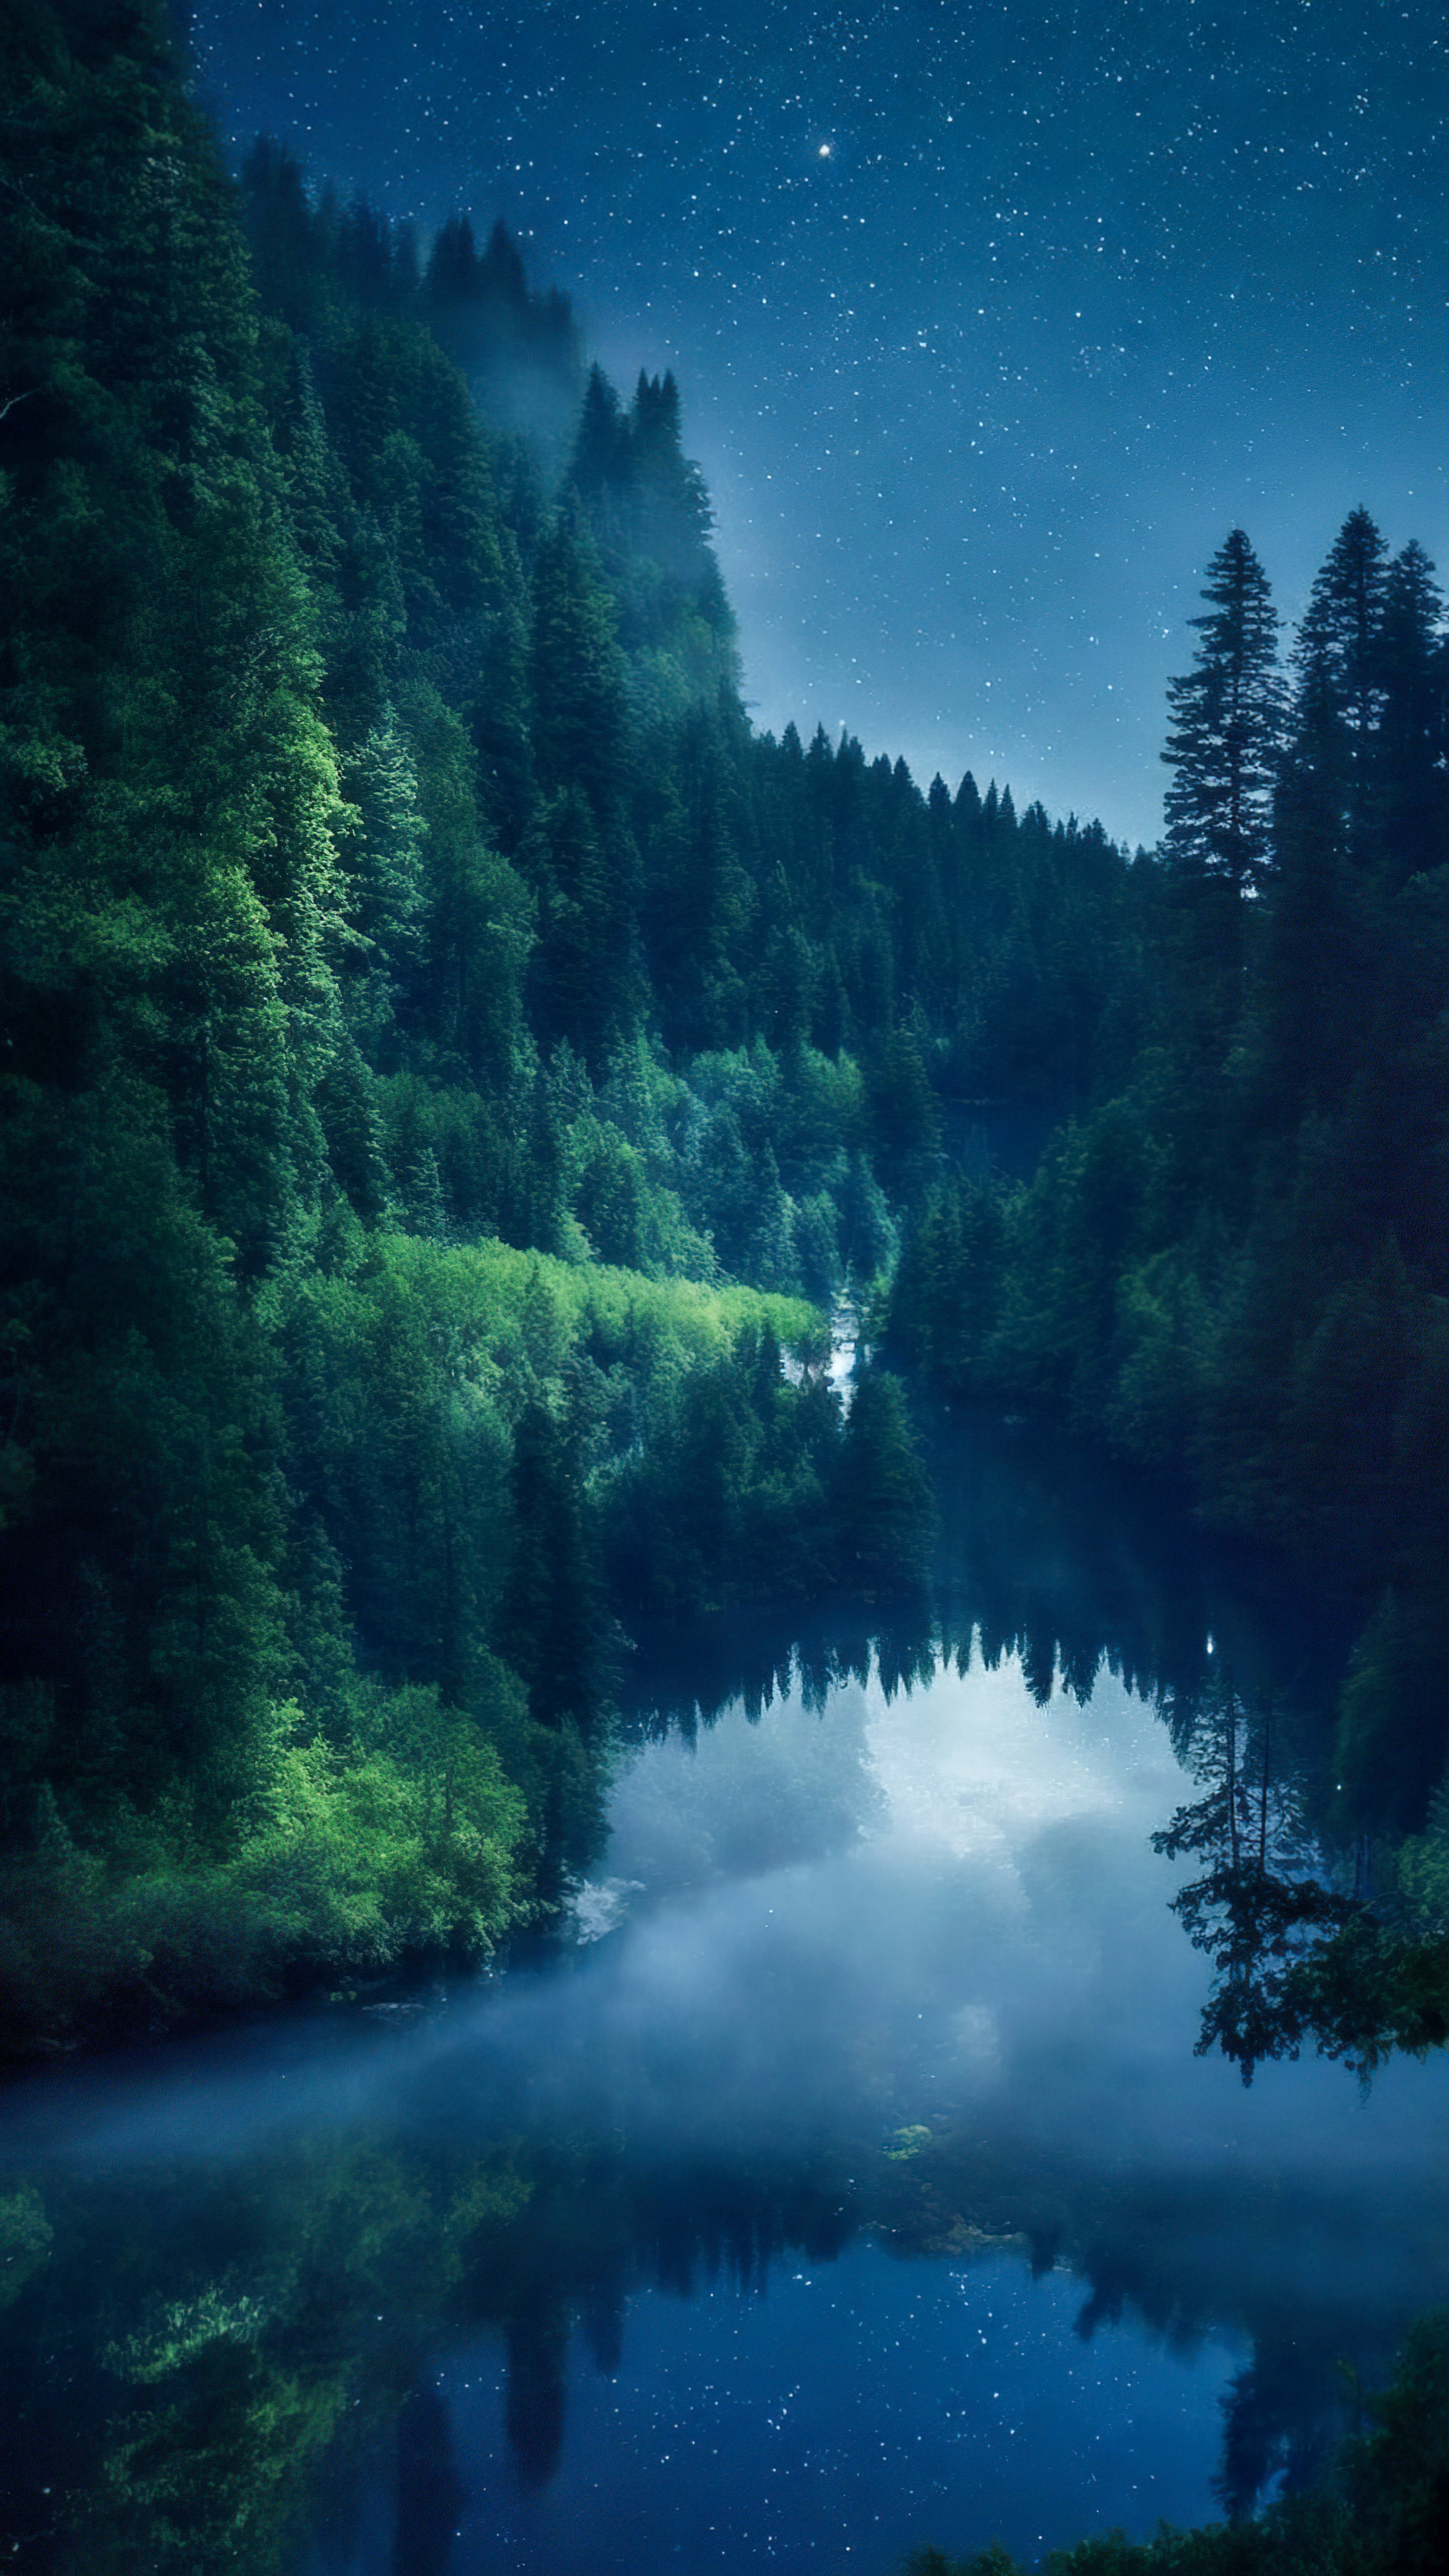 Notre fond d'écran de paysages en 4K vous transporte vers une rivière paisible serpentant à travers une forêt dense, sous un ciel nocturne scintillant.